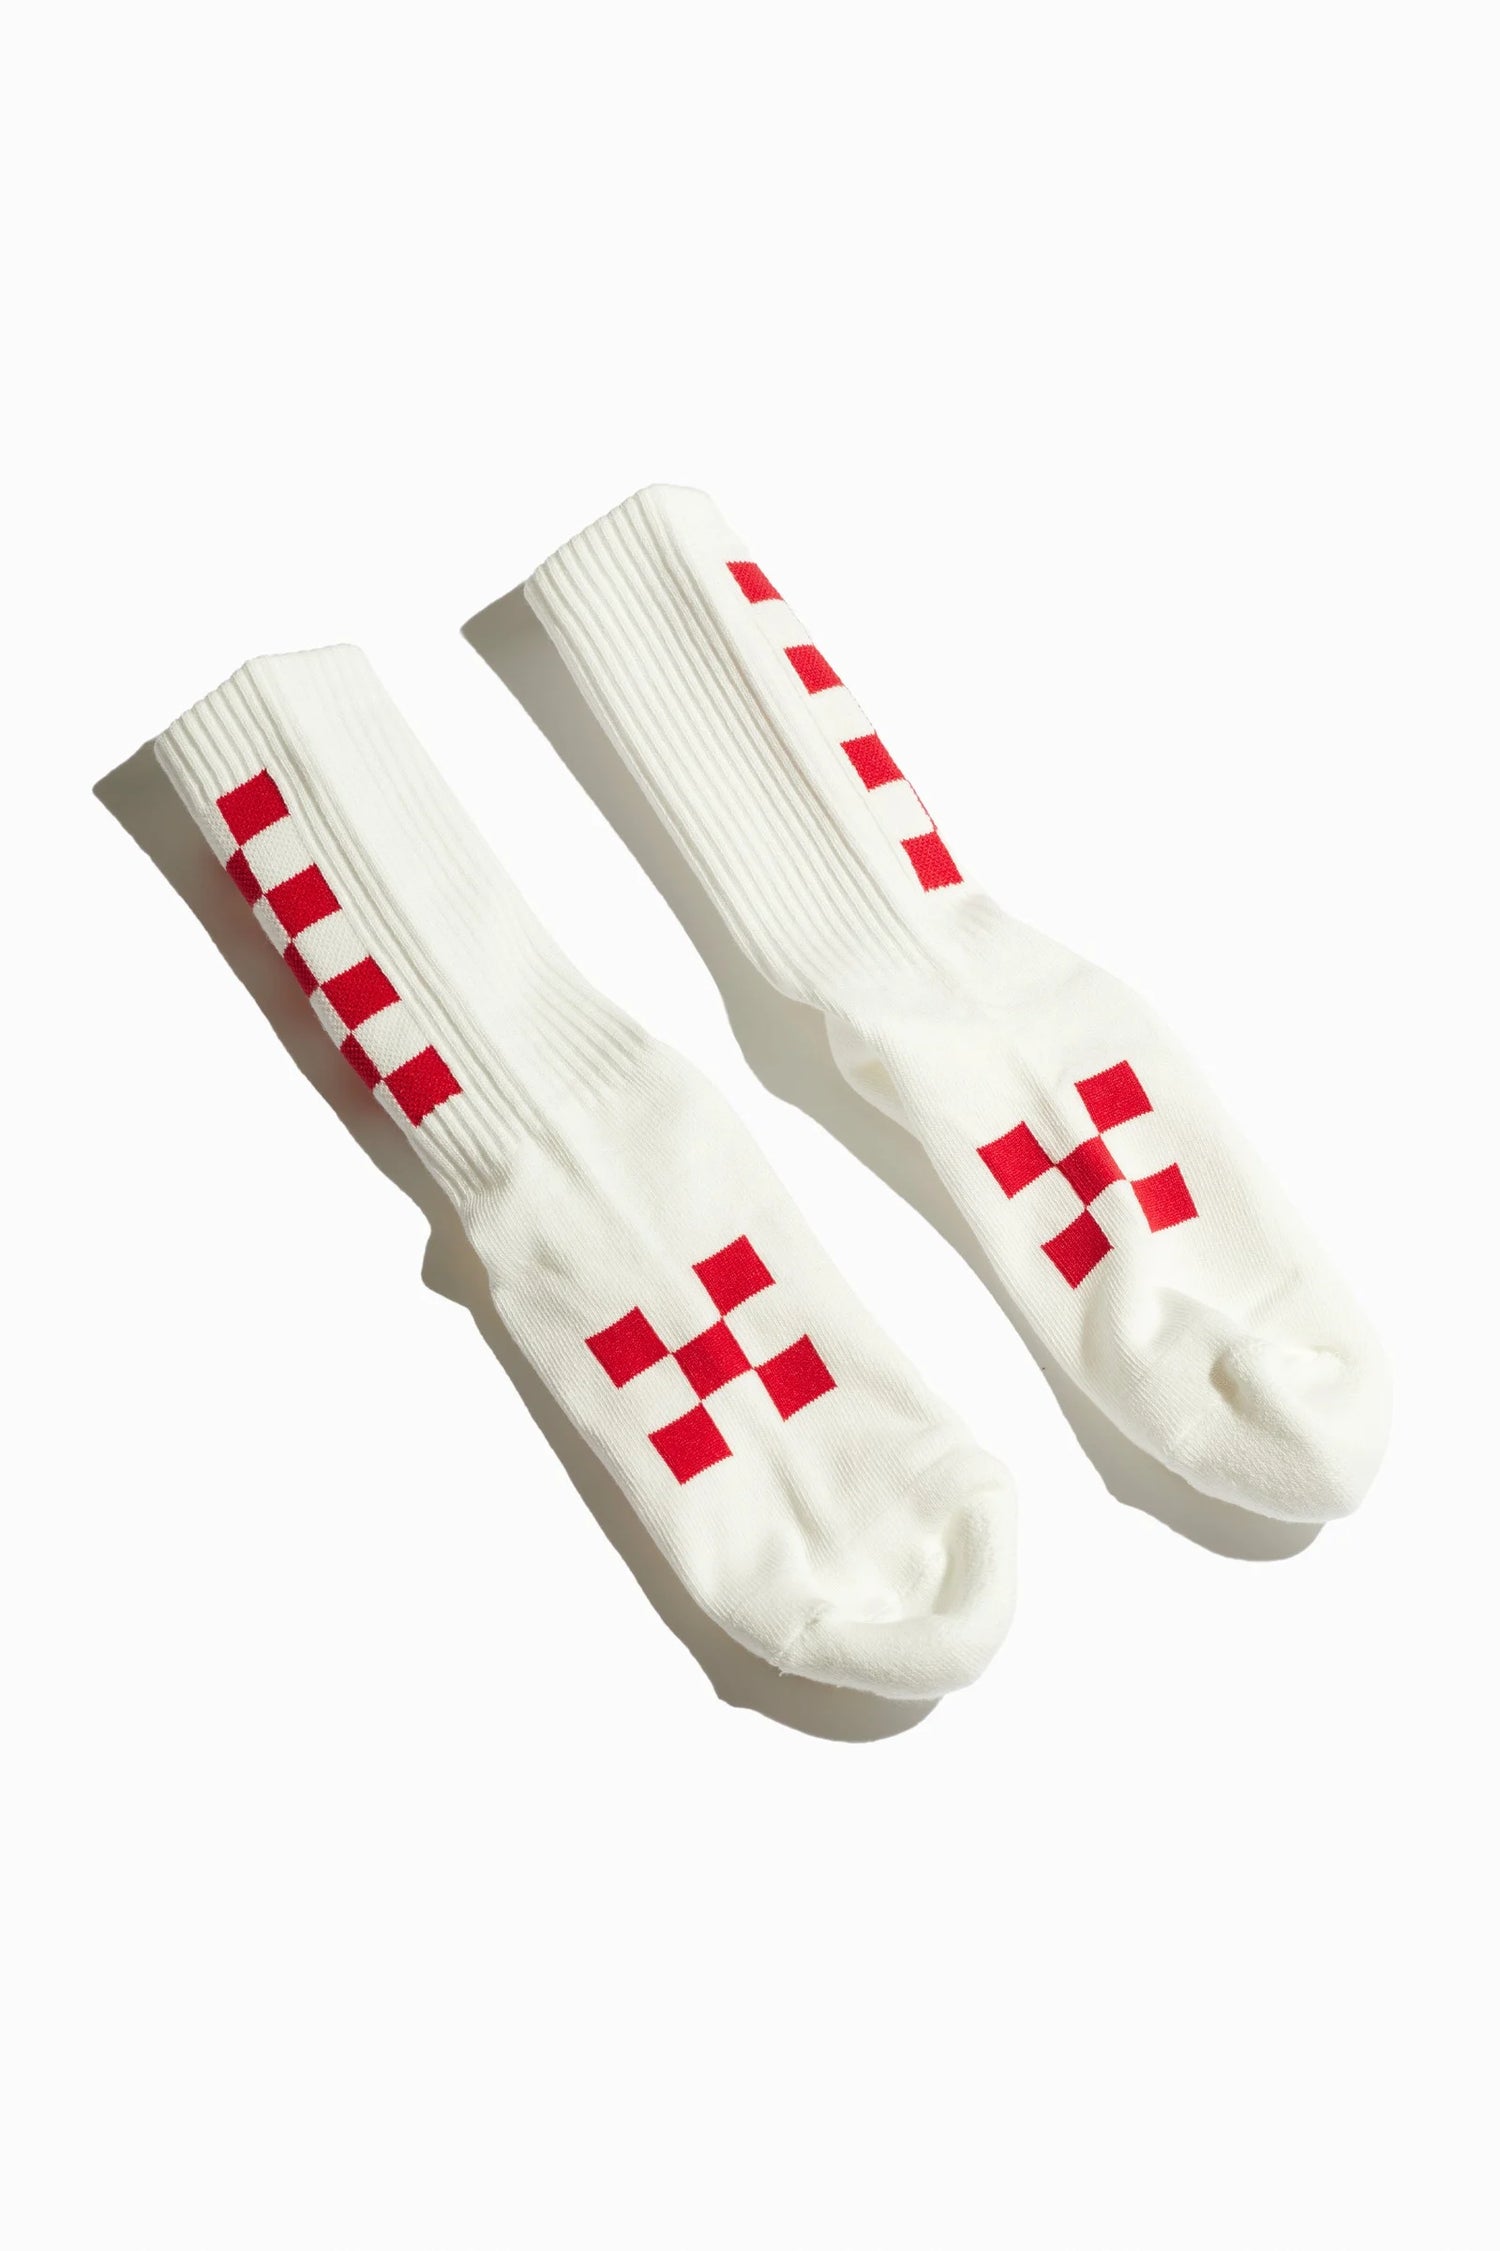 Apex socks, Made in Japan